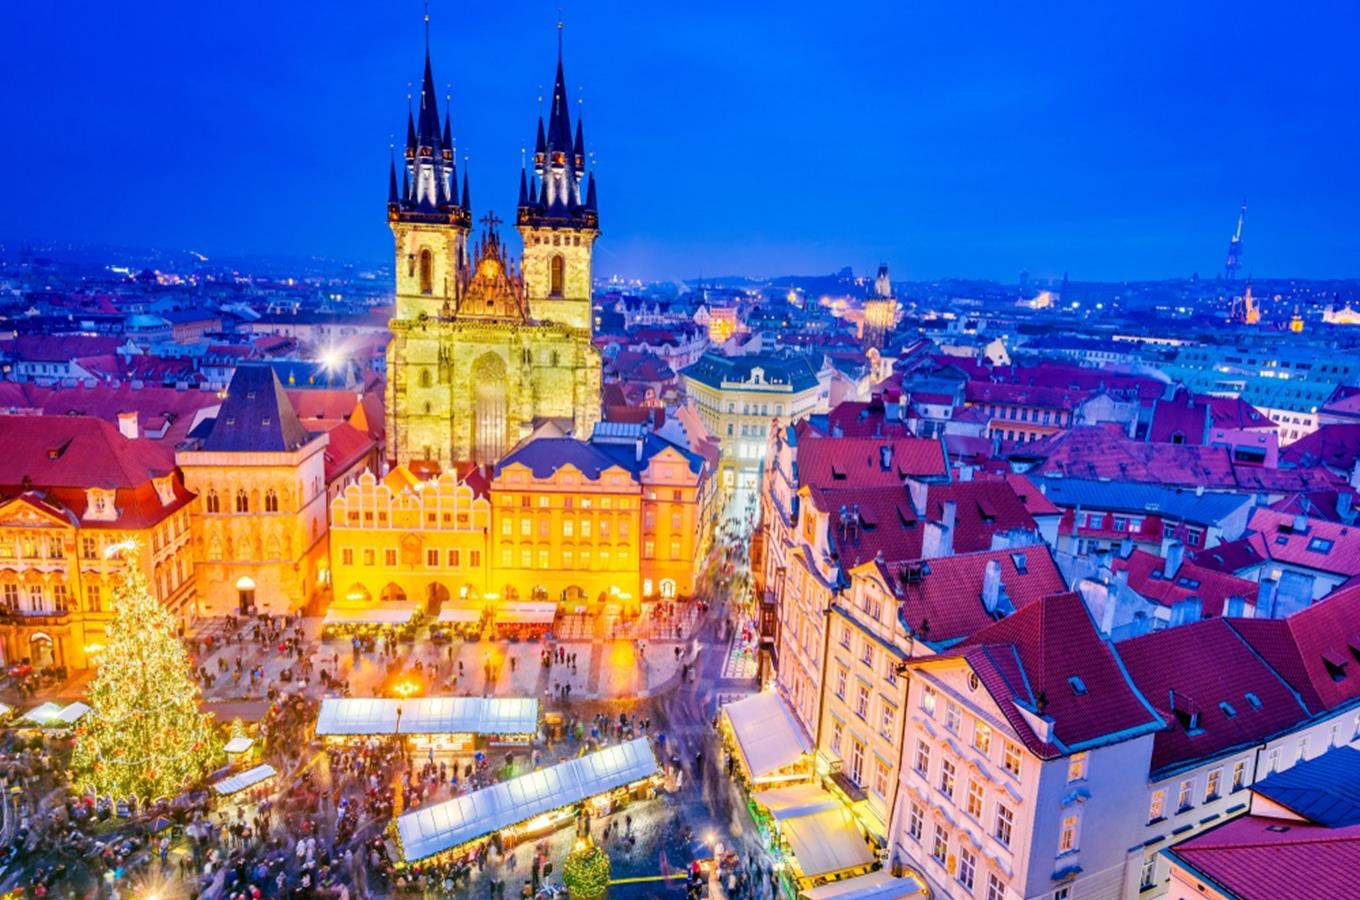 Letošní Vánoční trhy v centru Prahy jsou inspirovány pohádkovými motivy 